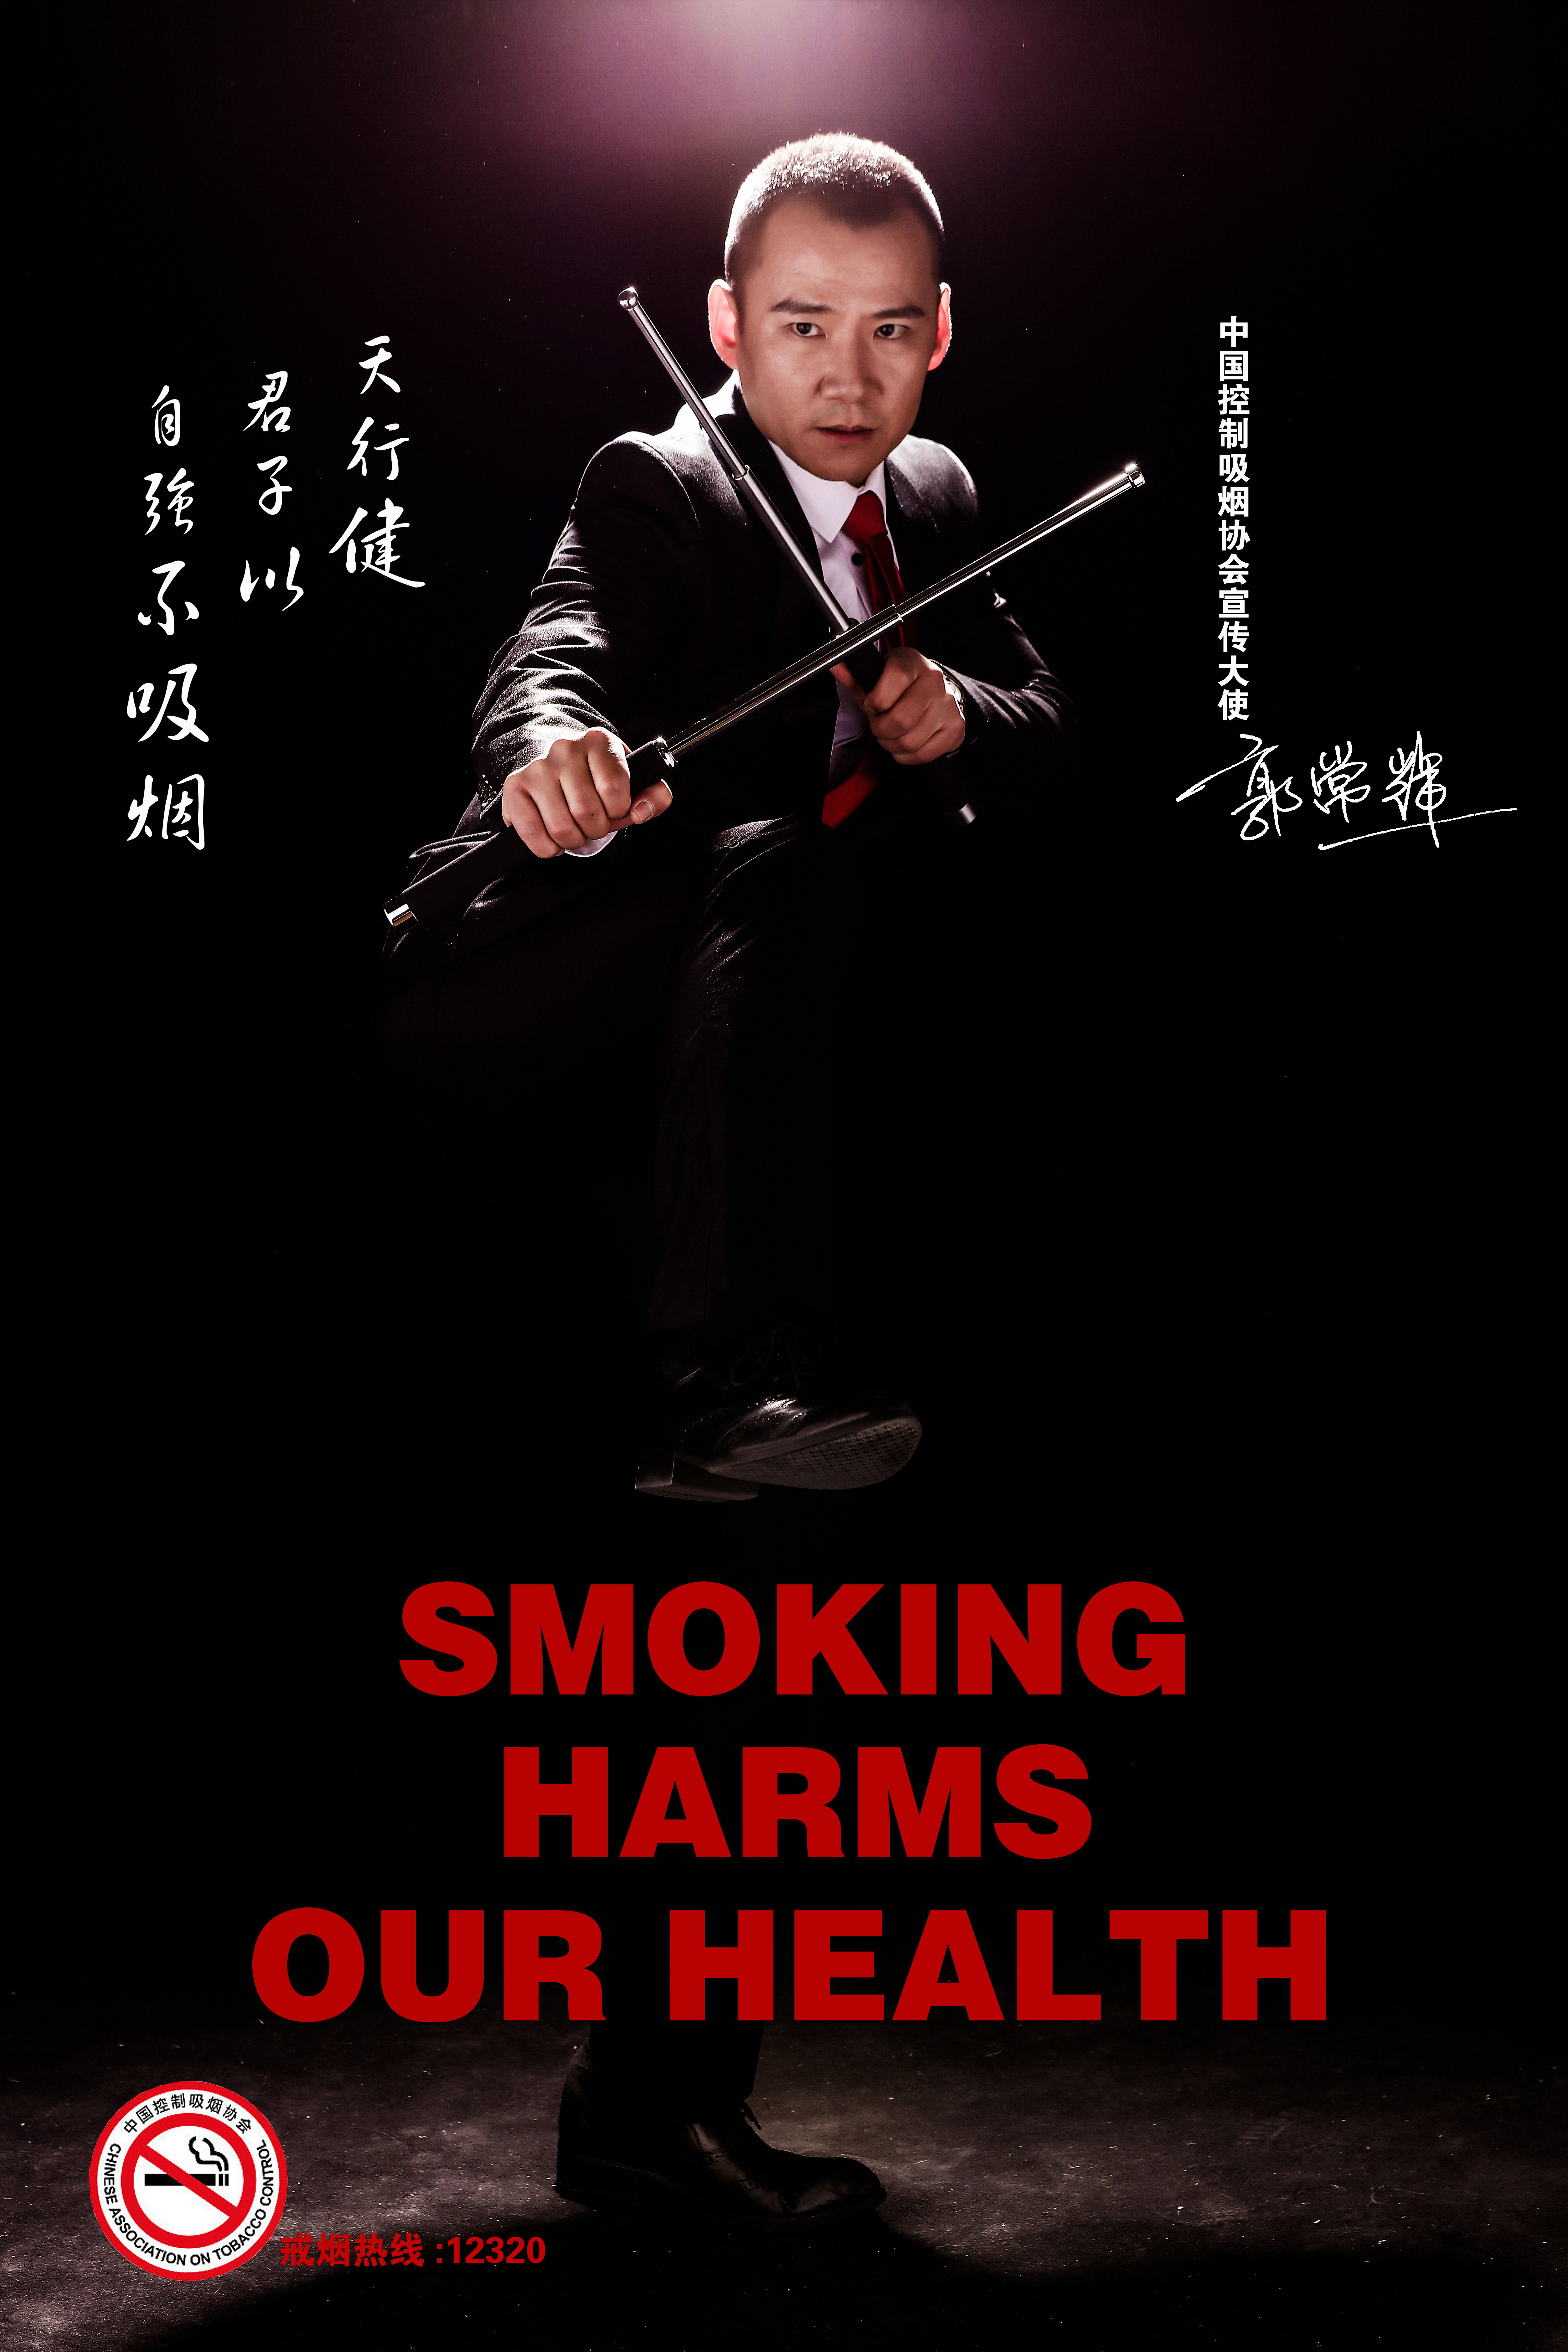 中國控制吸菸協會宣傳大使郭常輝